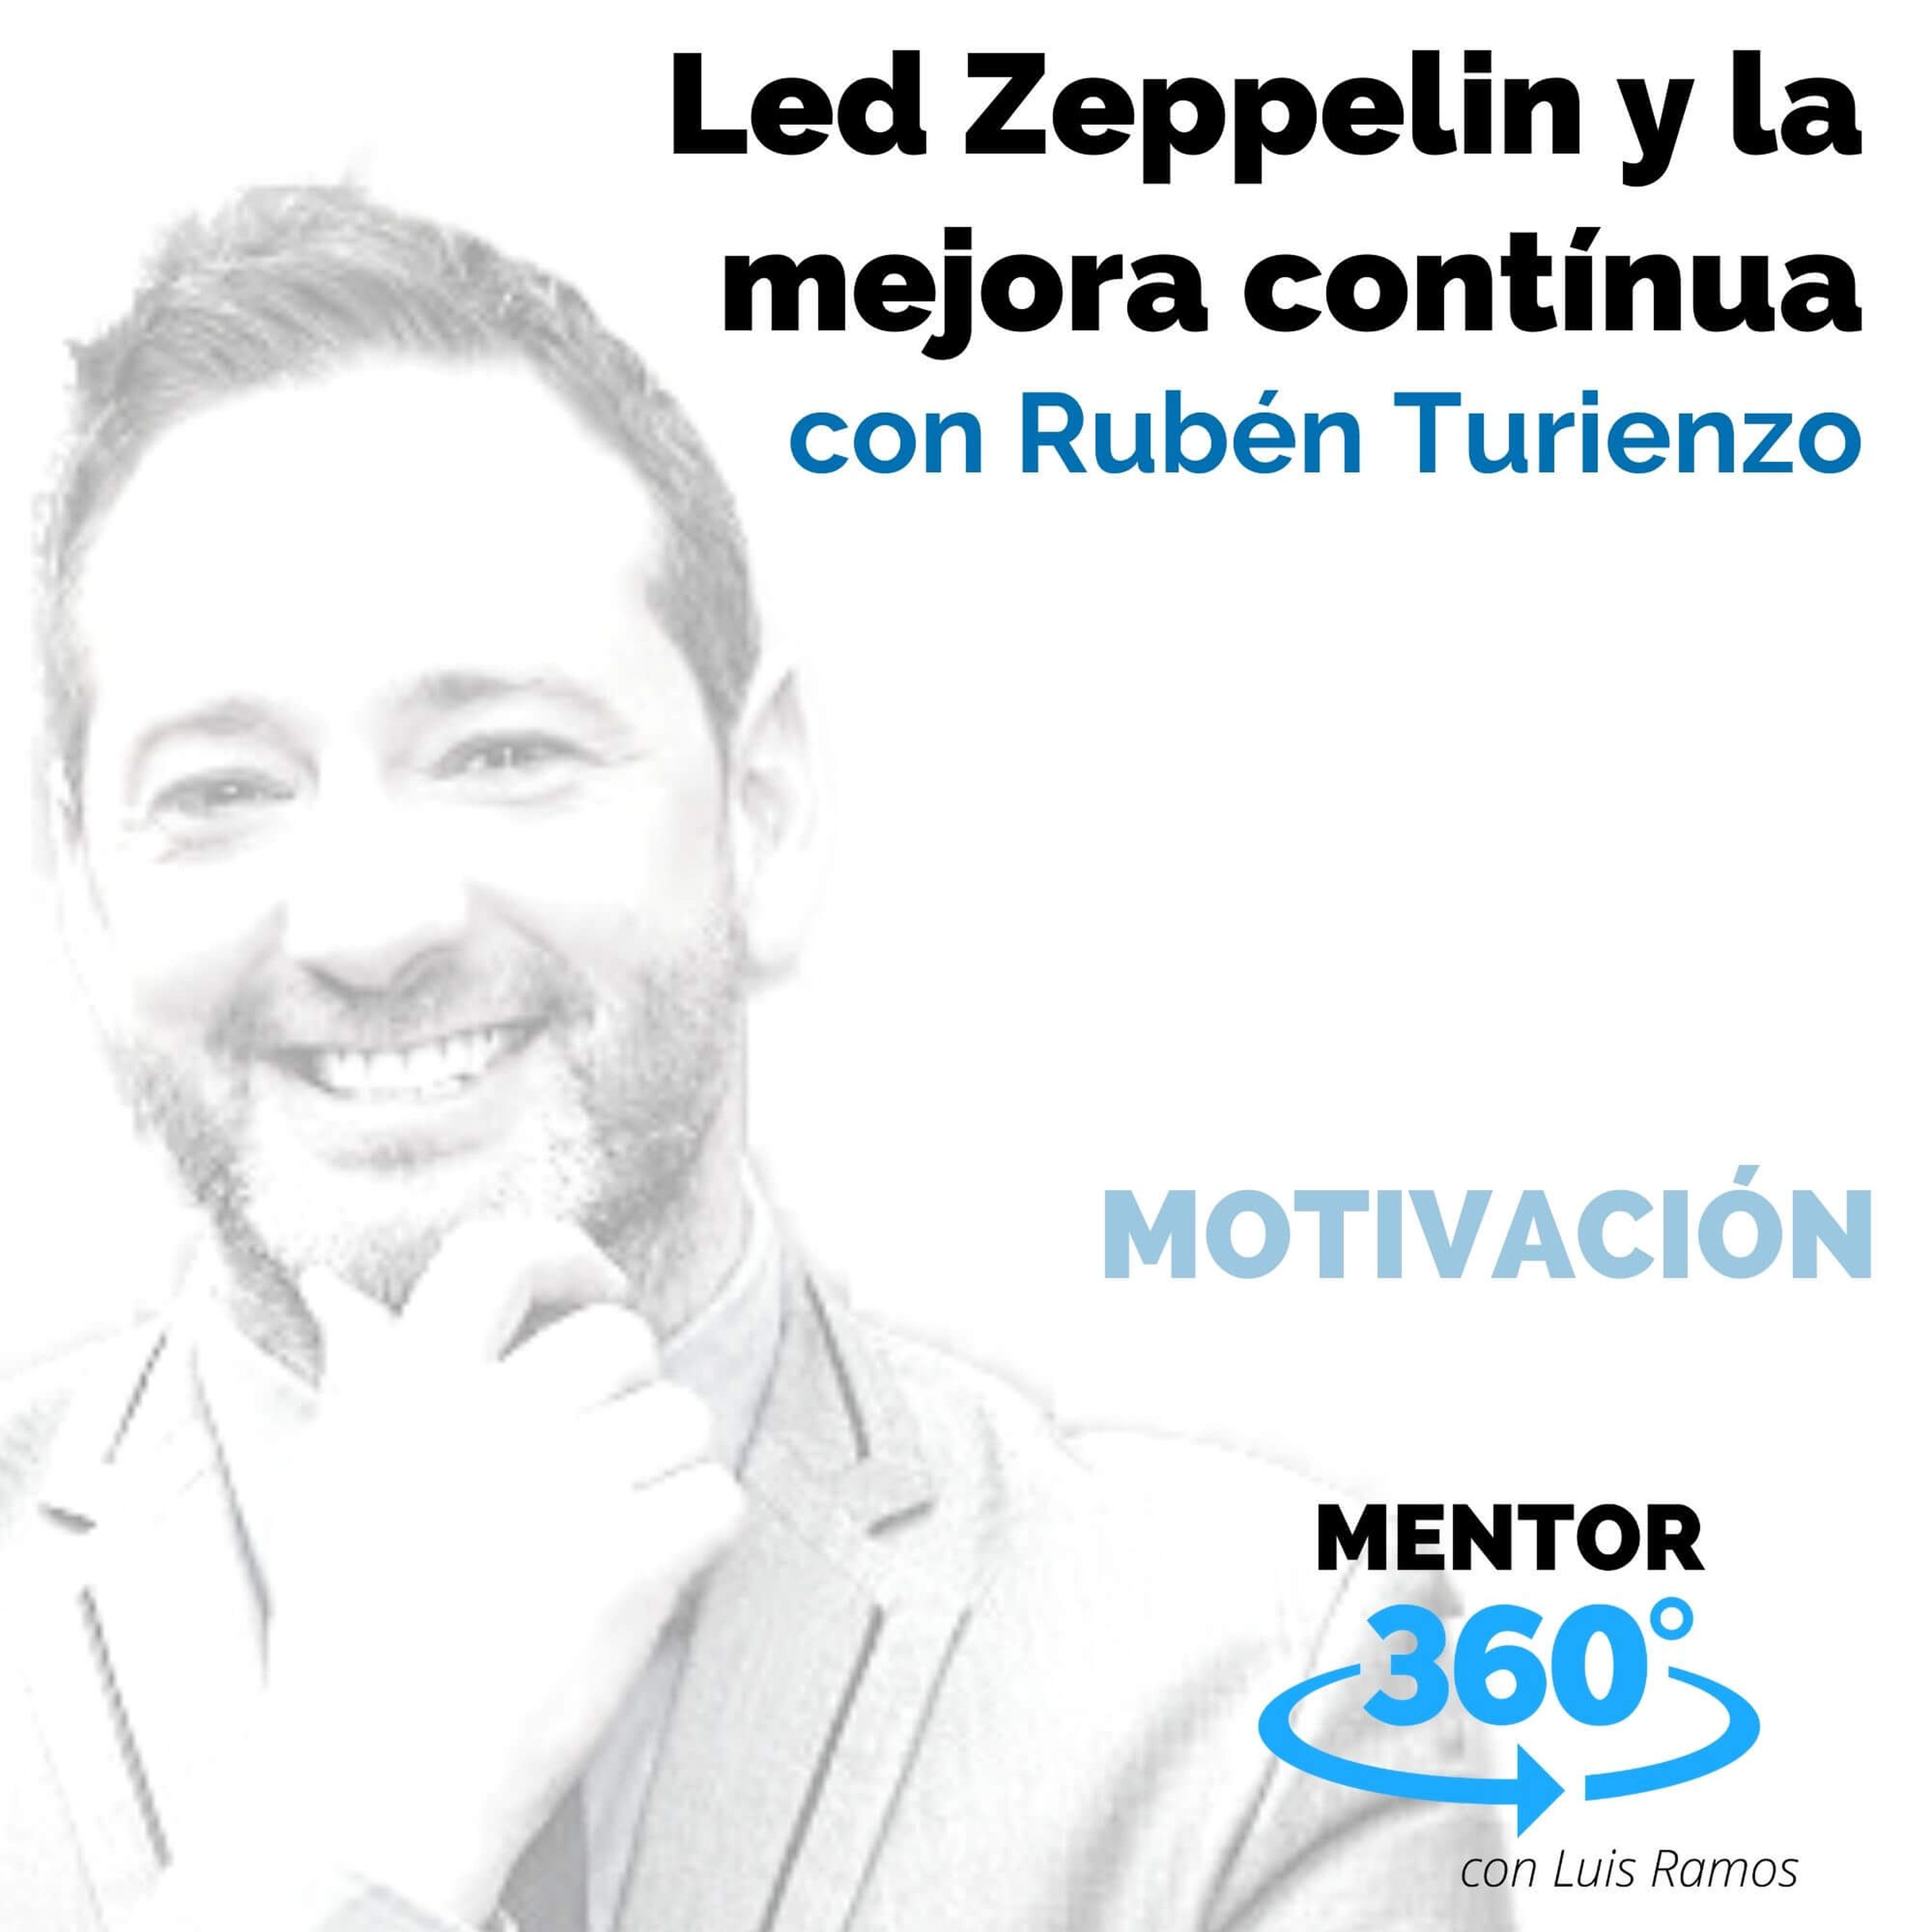 Led Zeppelin y la mejora contínua, con Rubén Turienzo - MOTIVACIÓN